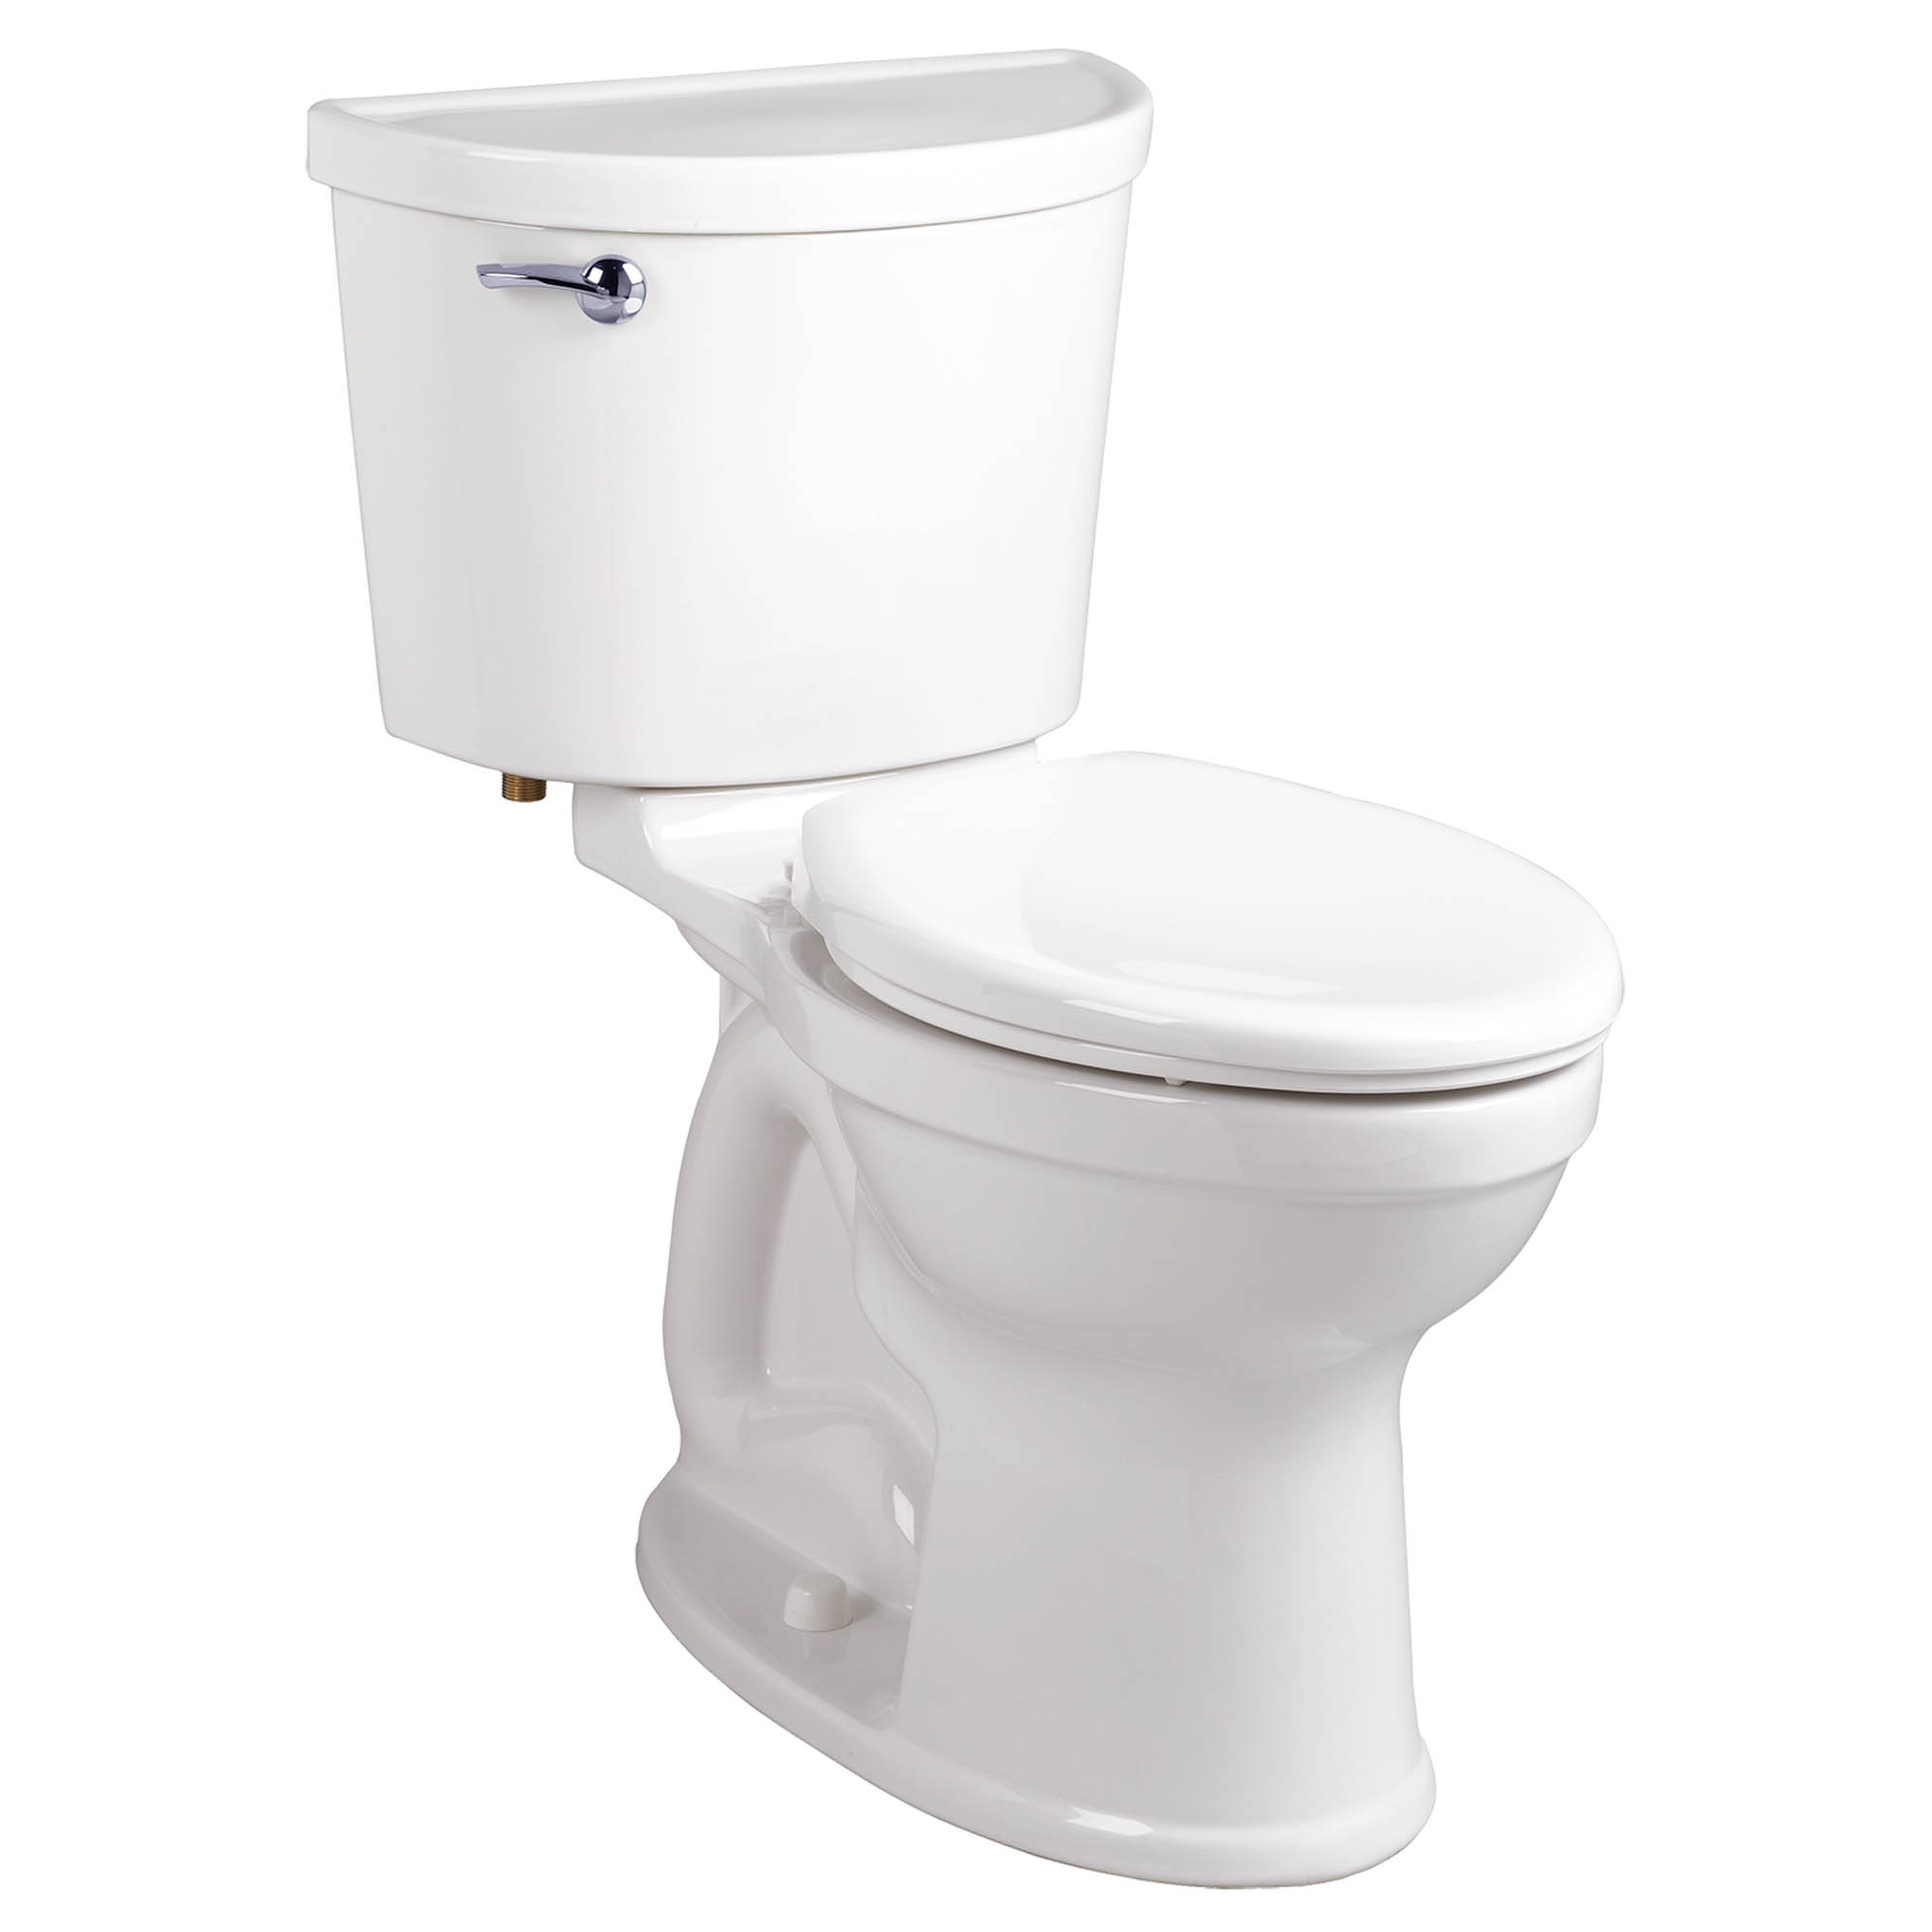 Toilette Champion PRO, 2 pièces, 1,28 gpc/4,8 lpc, à cuvette allongée à hauteur régulière, sans siège